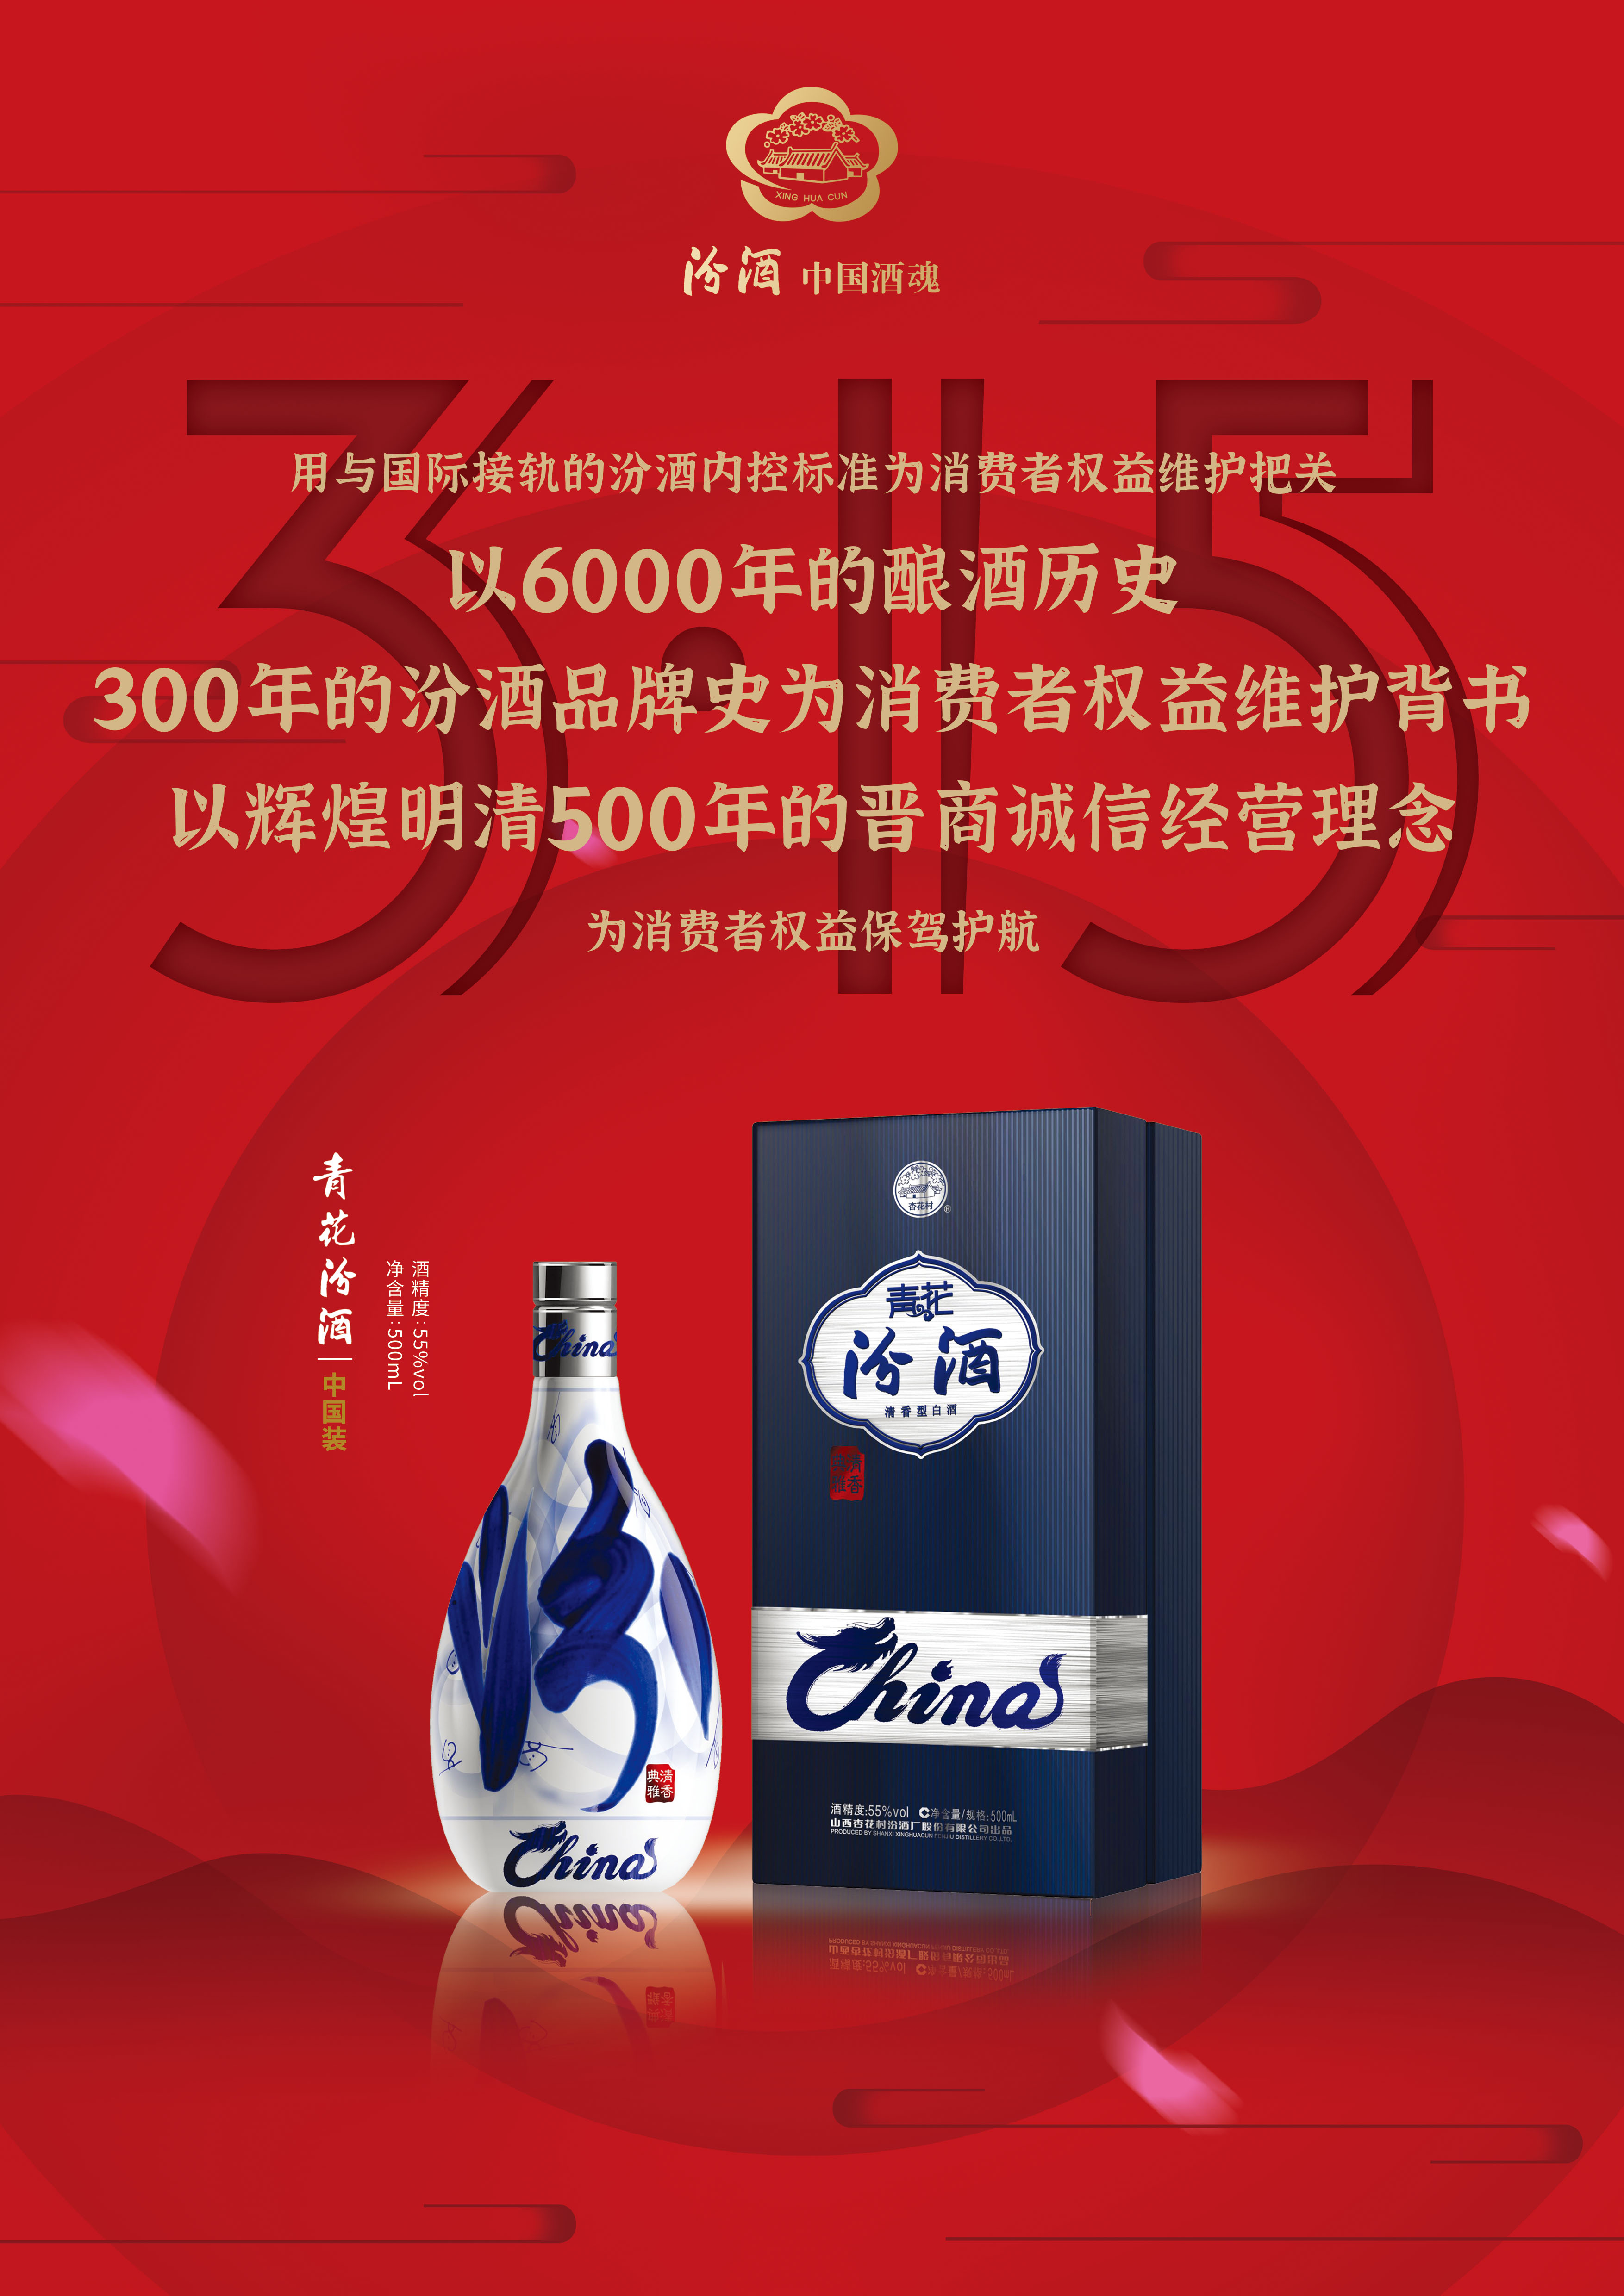 山西汾酒坚守品质生命线用品质酿出中国酒魂